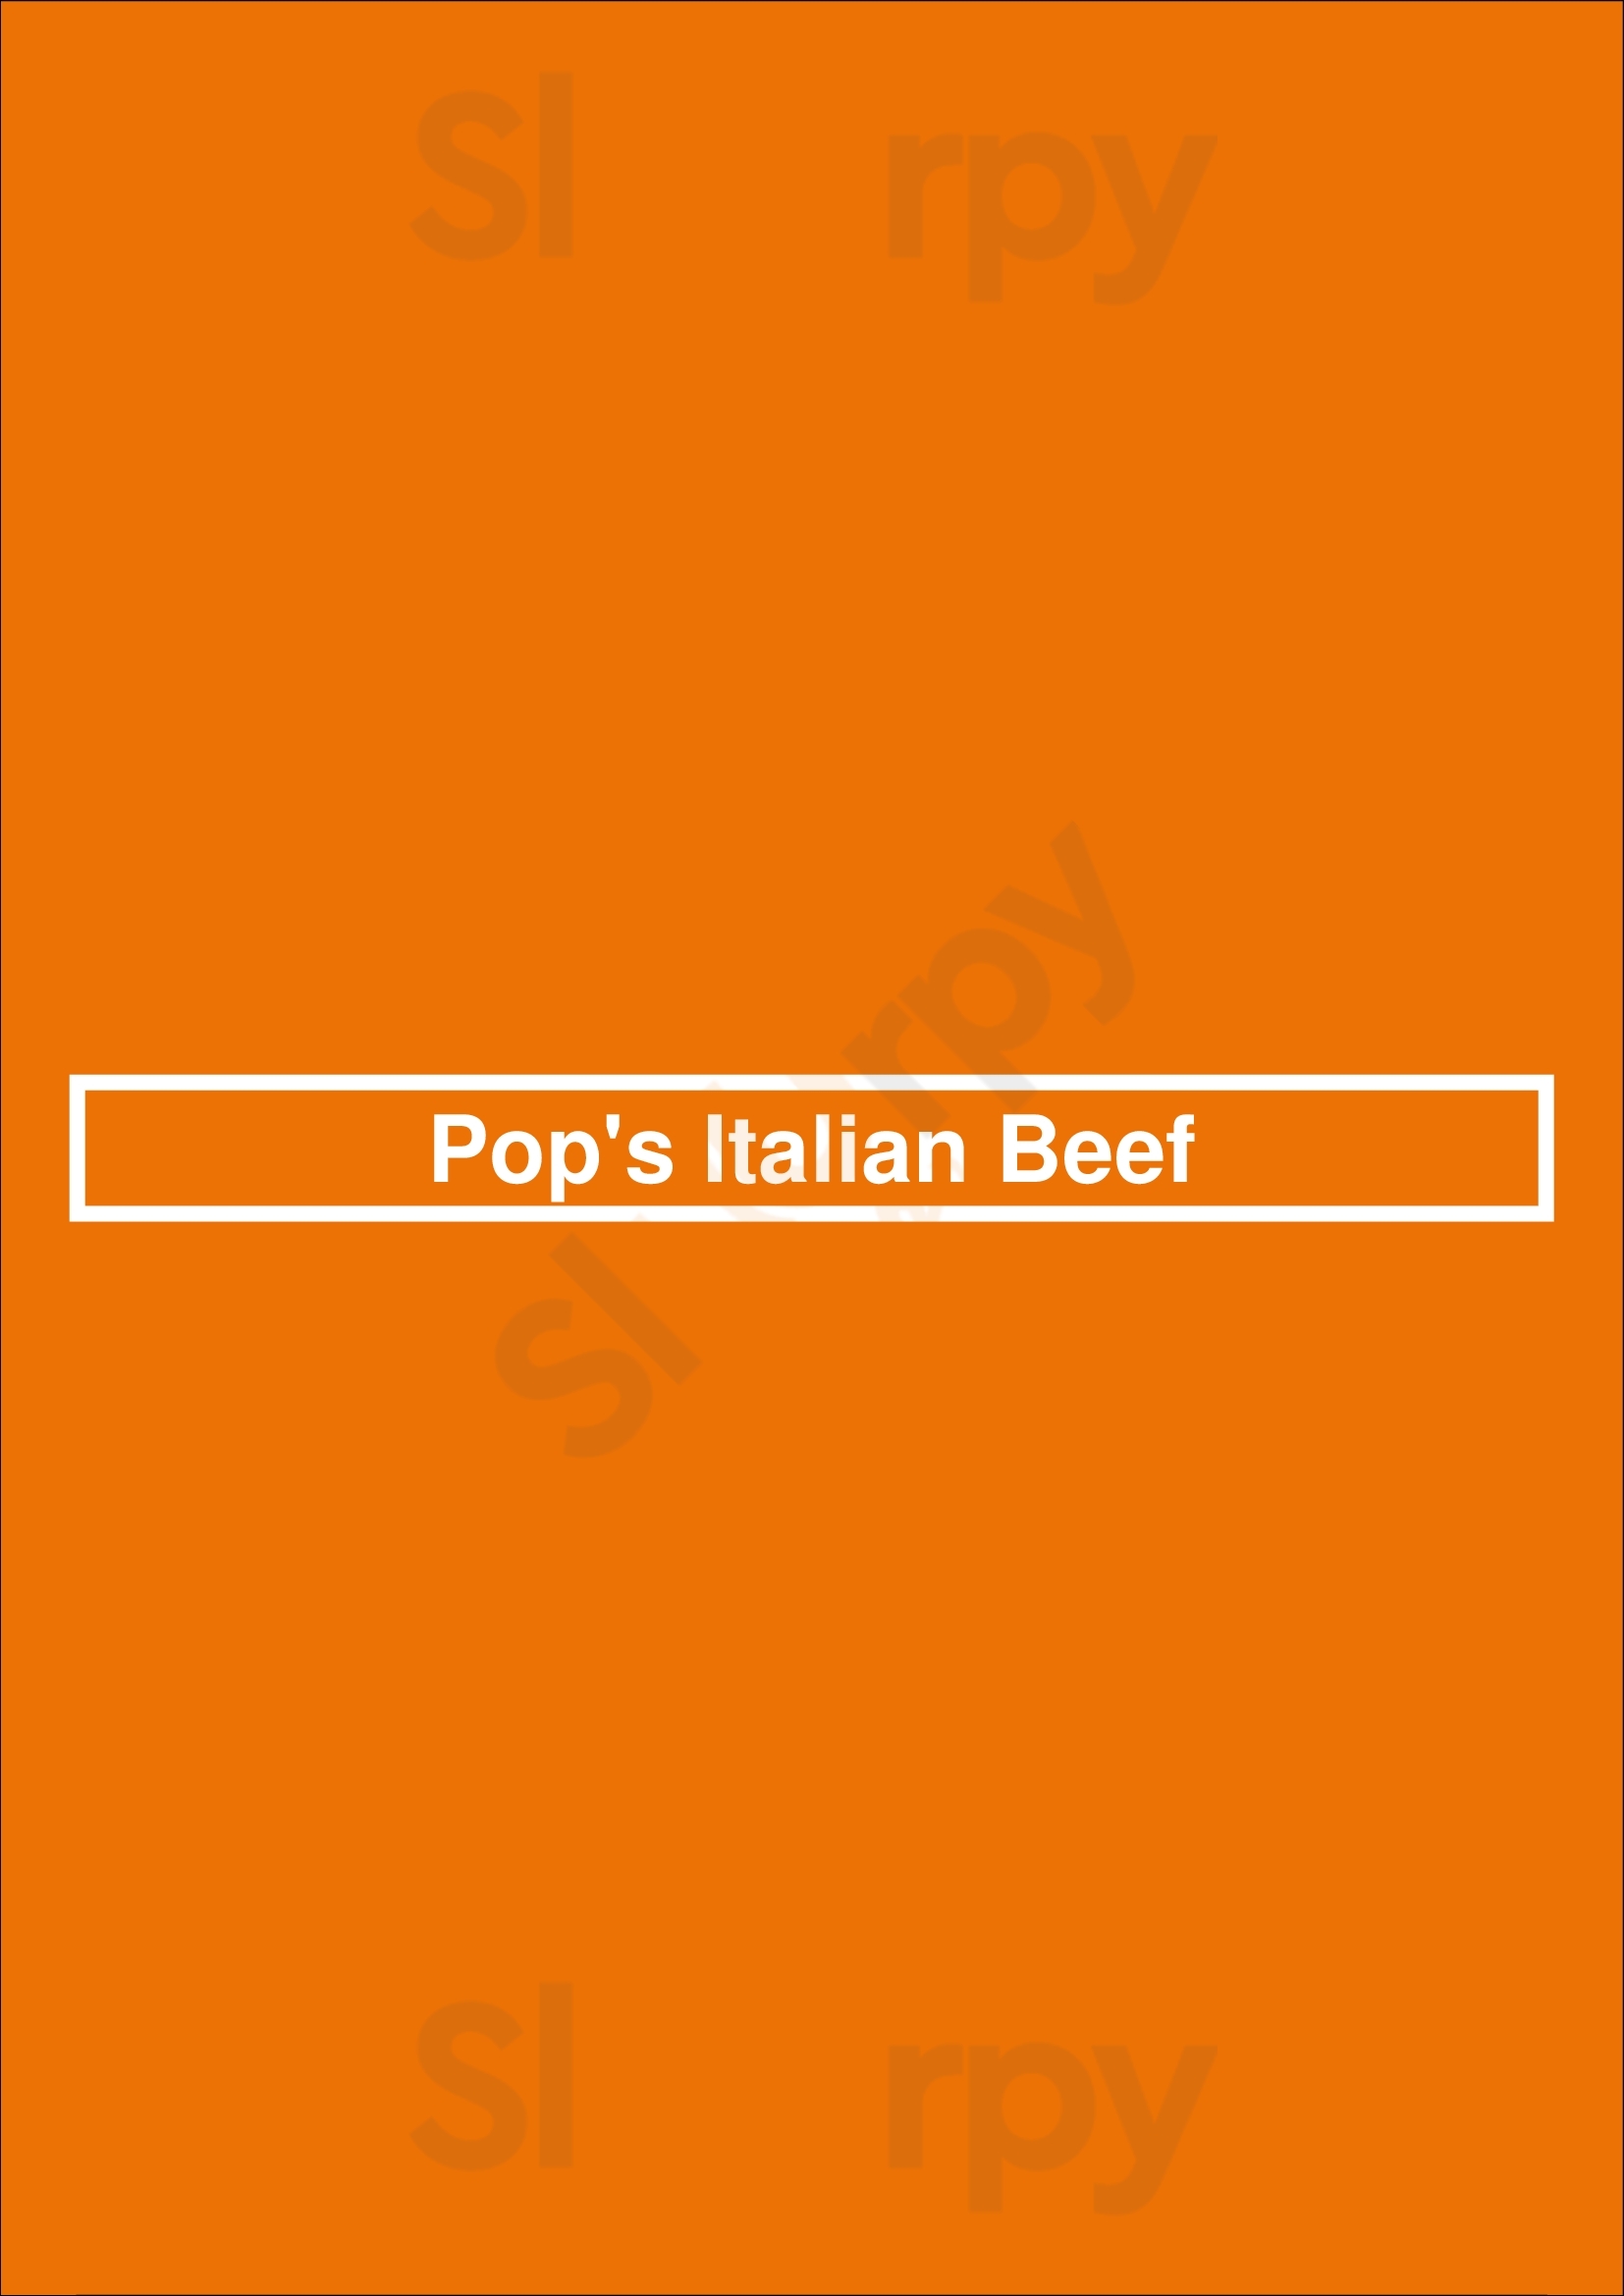 Pop's Italian Beef Chicago Menu - 1